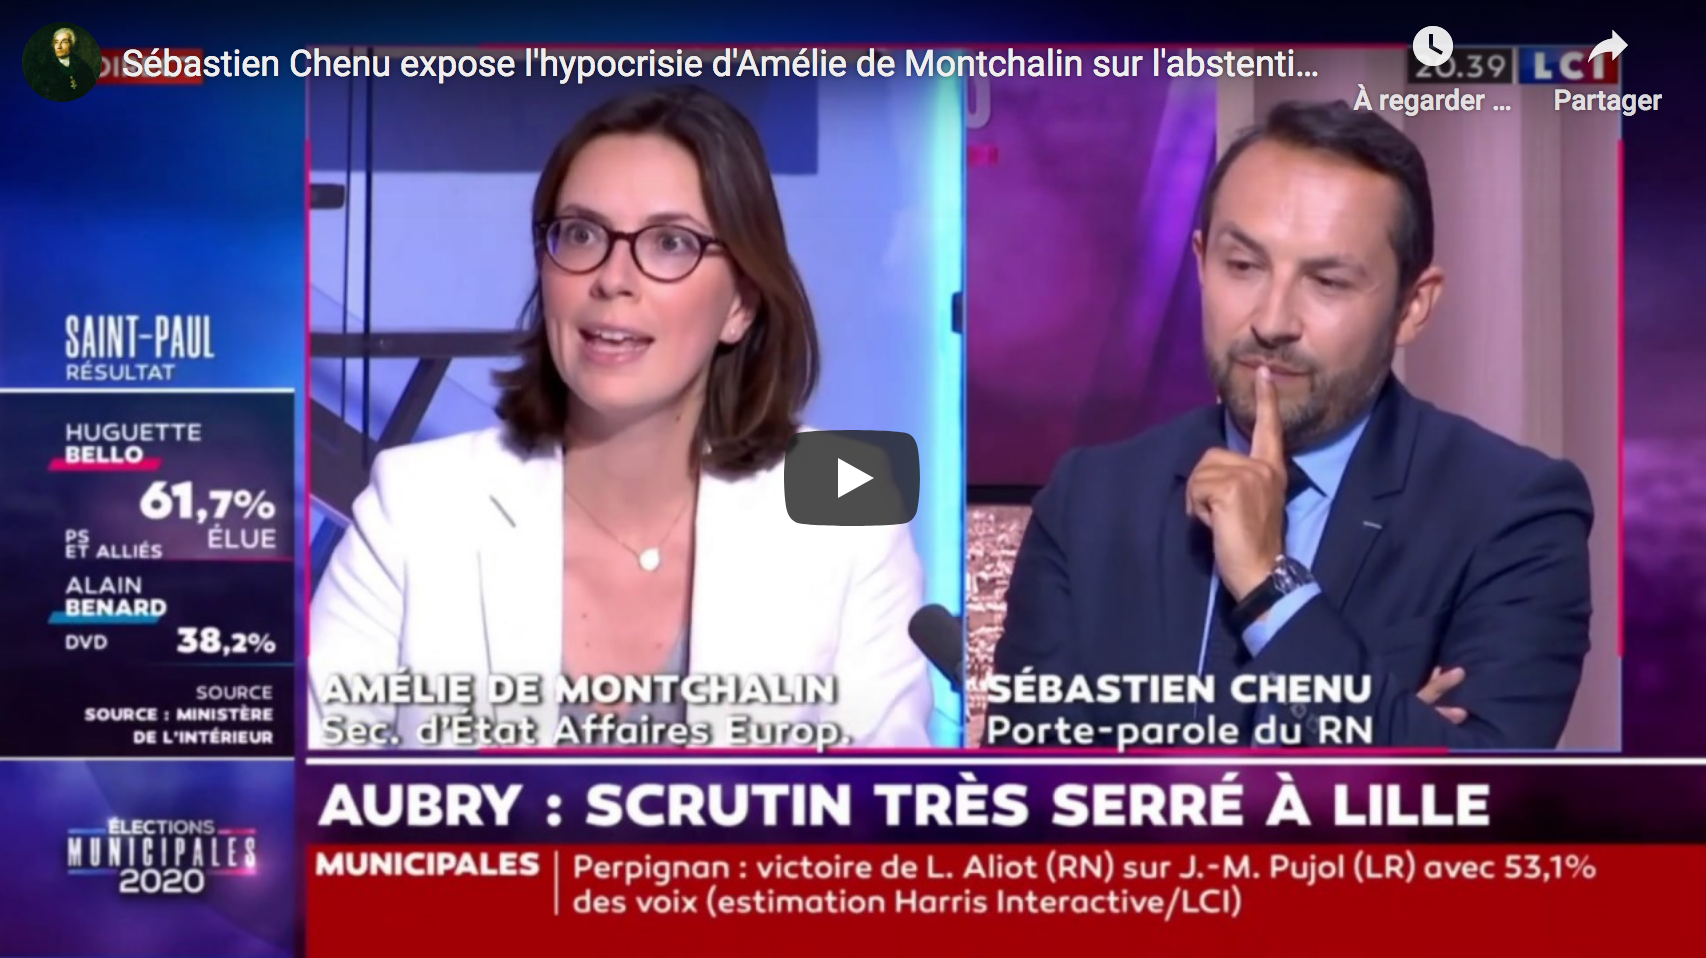 Sébastien Chenu expose l’hypocrisie d’Amélie de Montchalin sur l’abstention (VIDÉO)